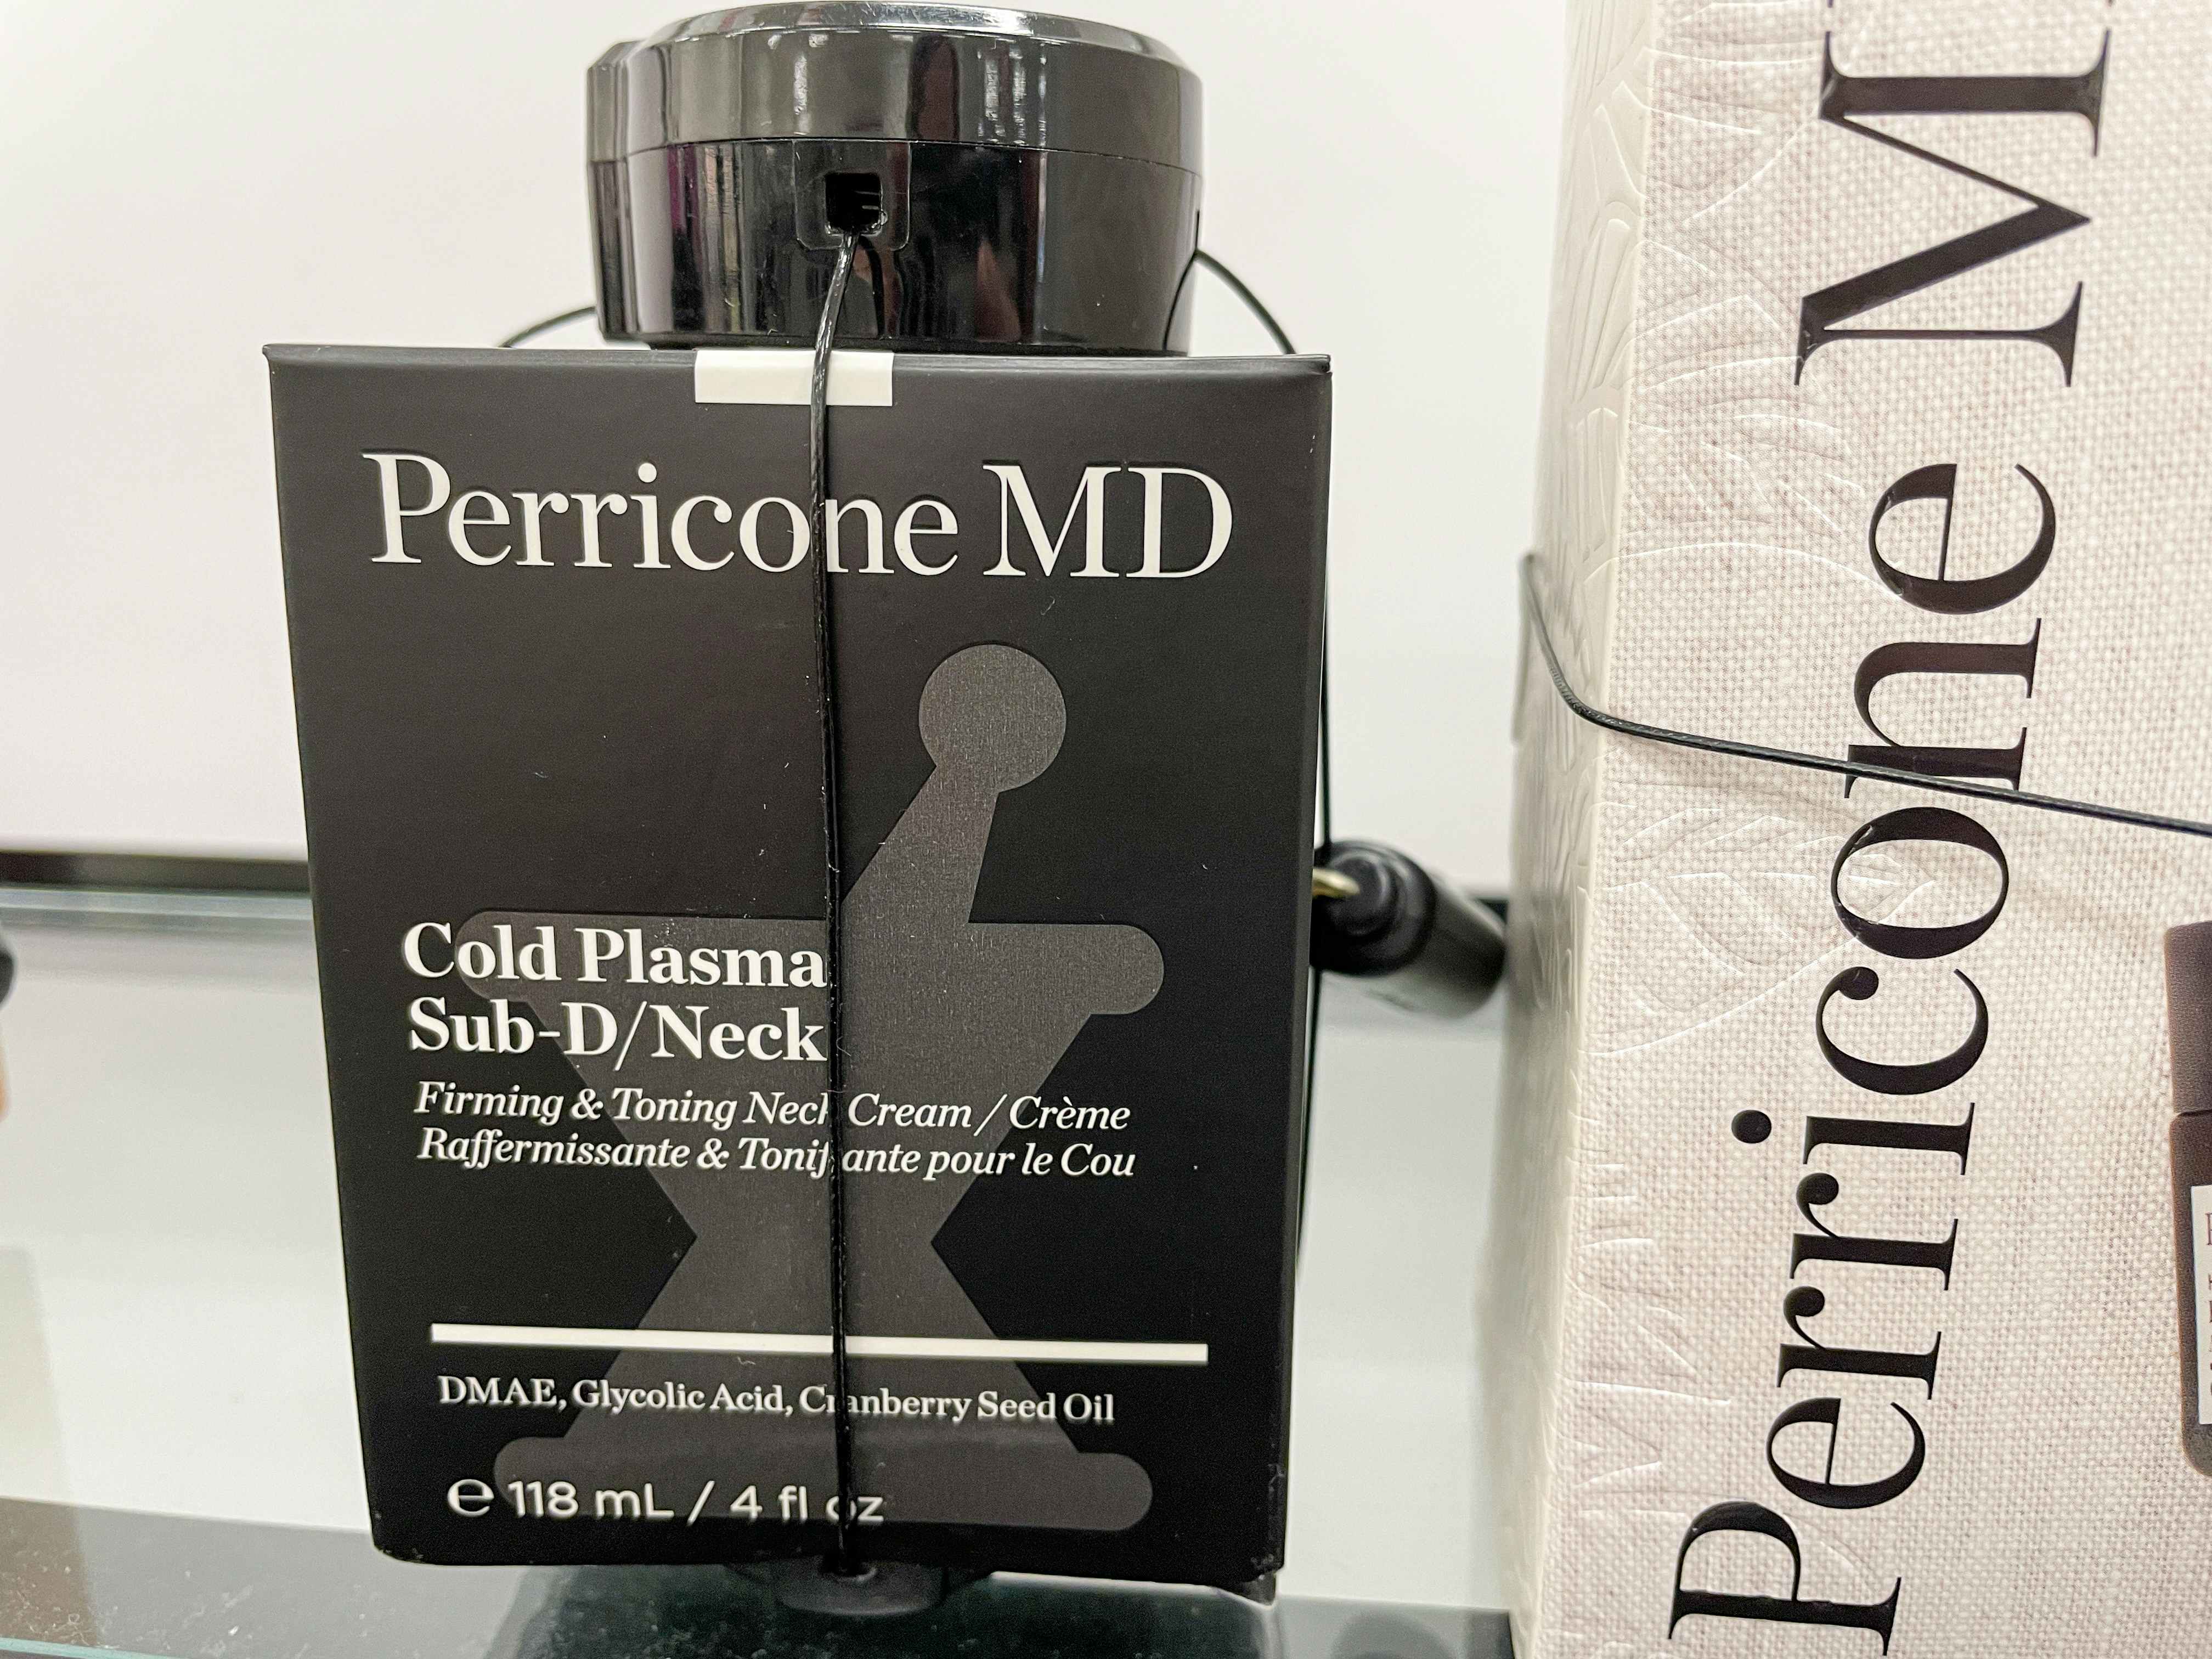 Perricone MD neck cream at tjmaxx